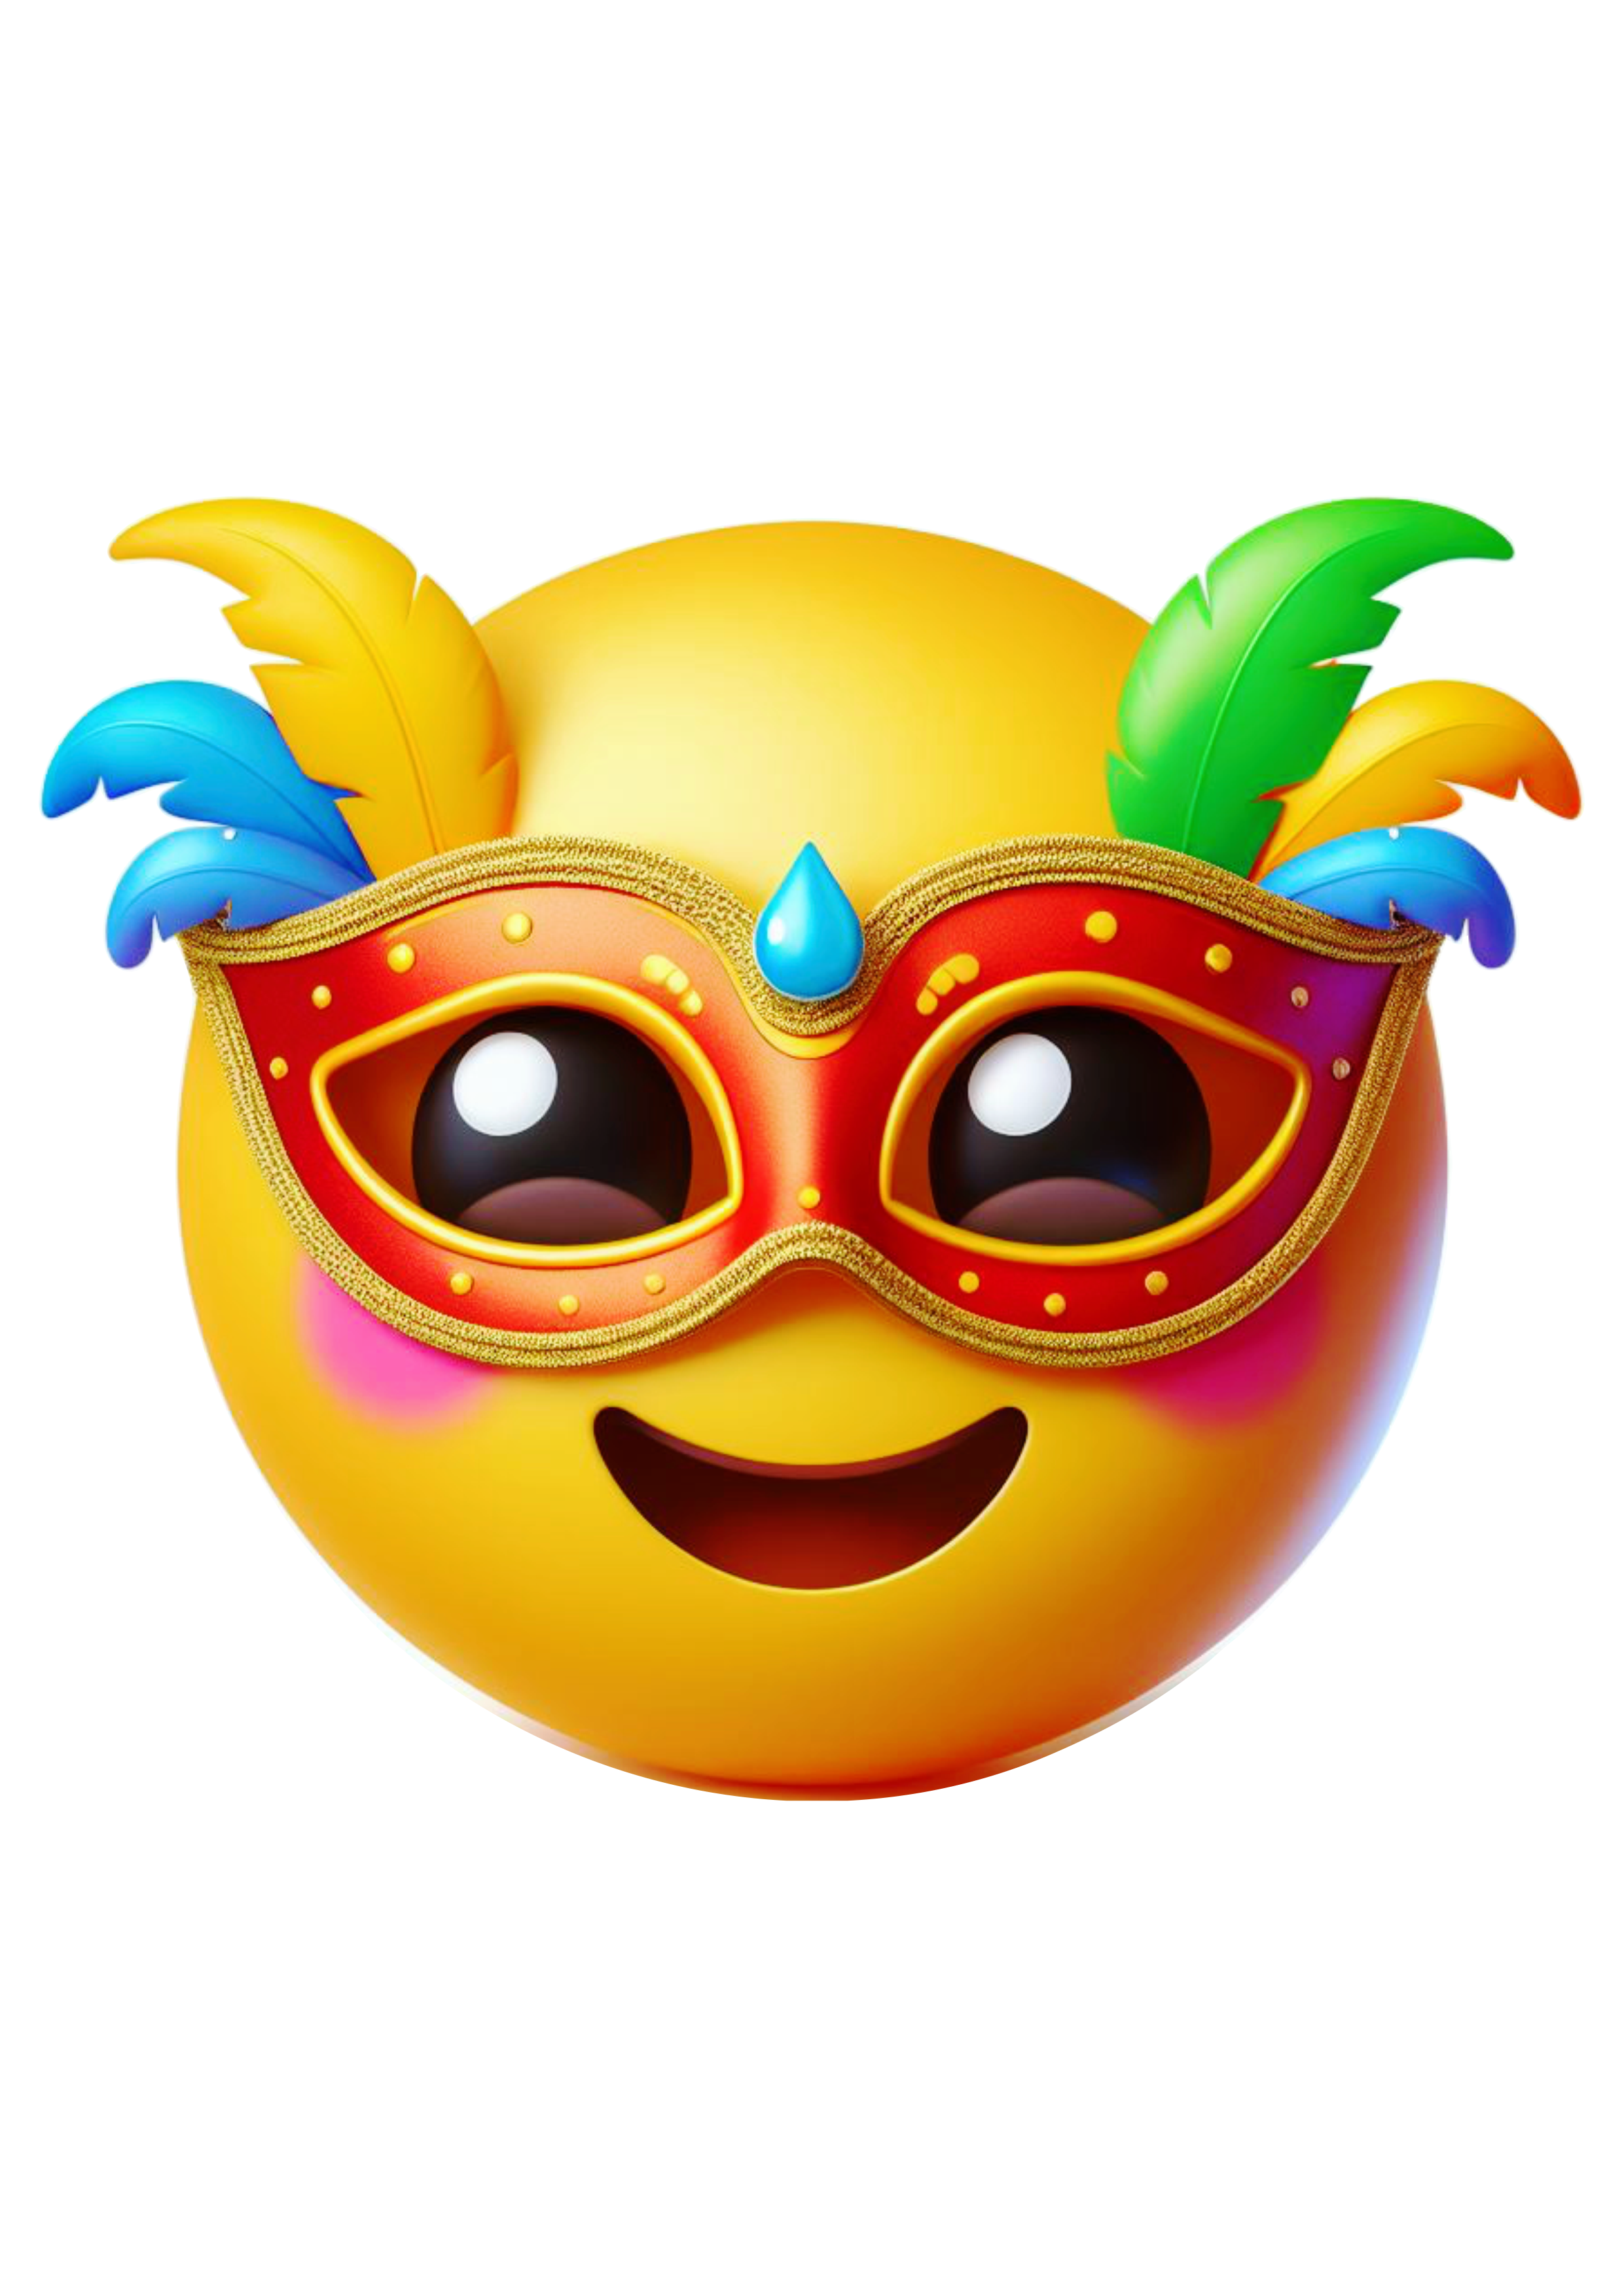 Carnaval emoji para whatsapp instagram png